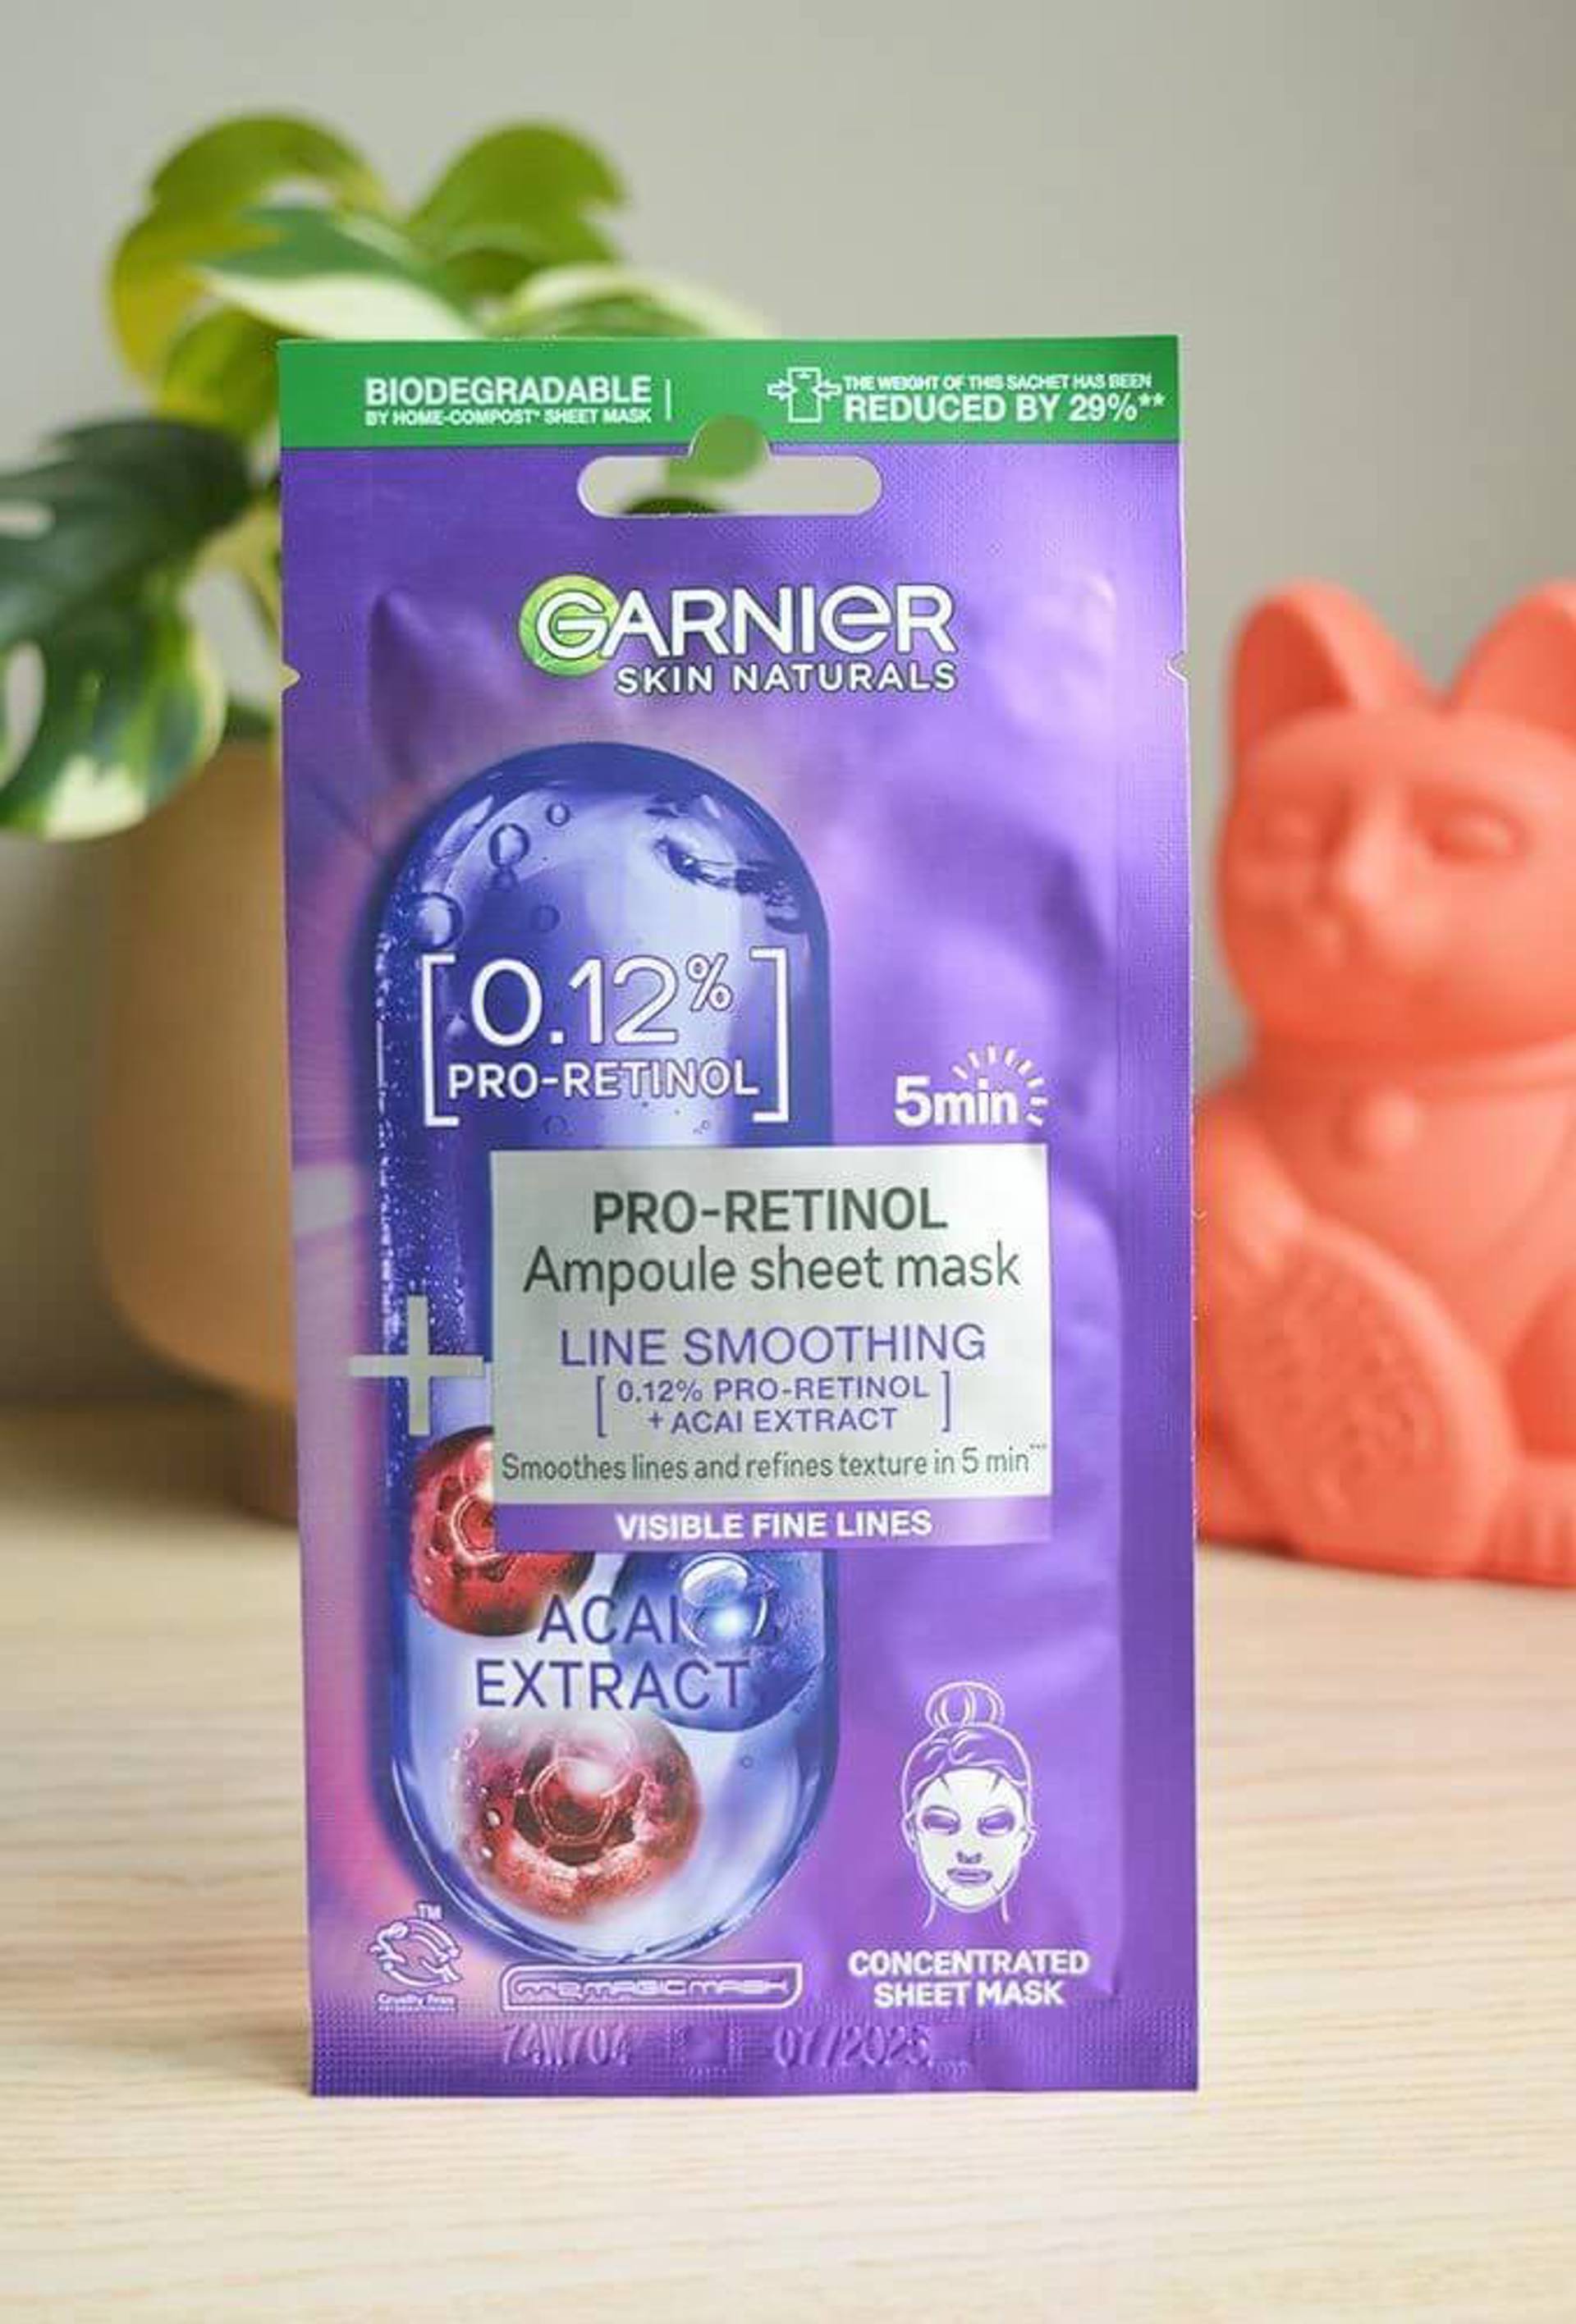 Garnier Pro-Retinol Kağıt Yüz Maskesi Nasıl Kullanılır?